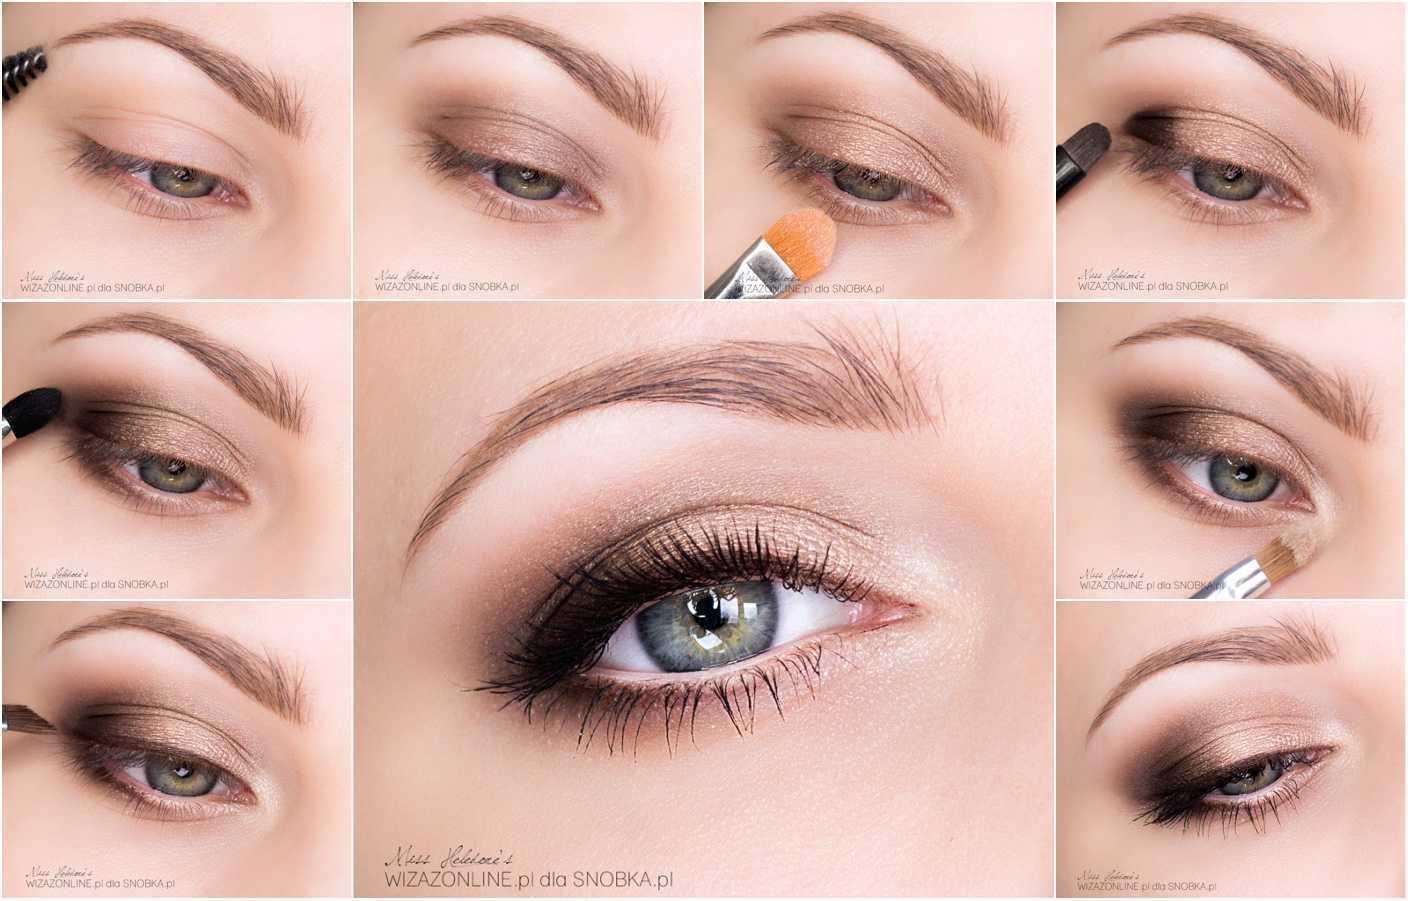 Как сделать макияж для миндалевидных глаз самостоятельно?